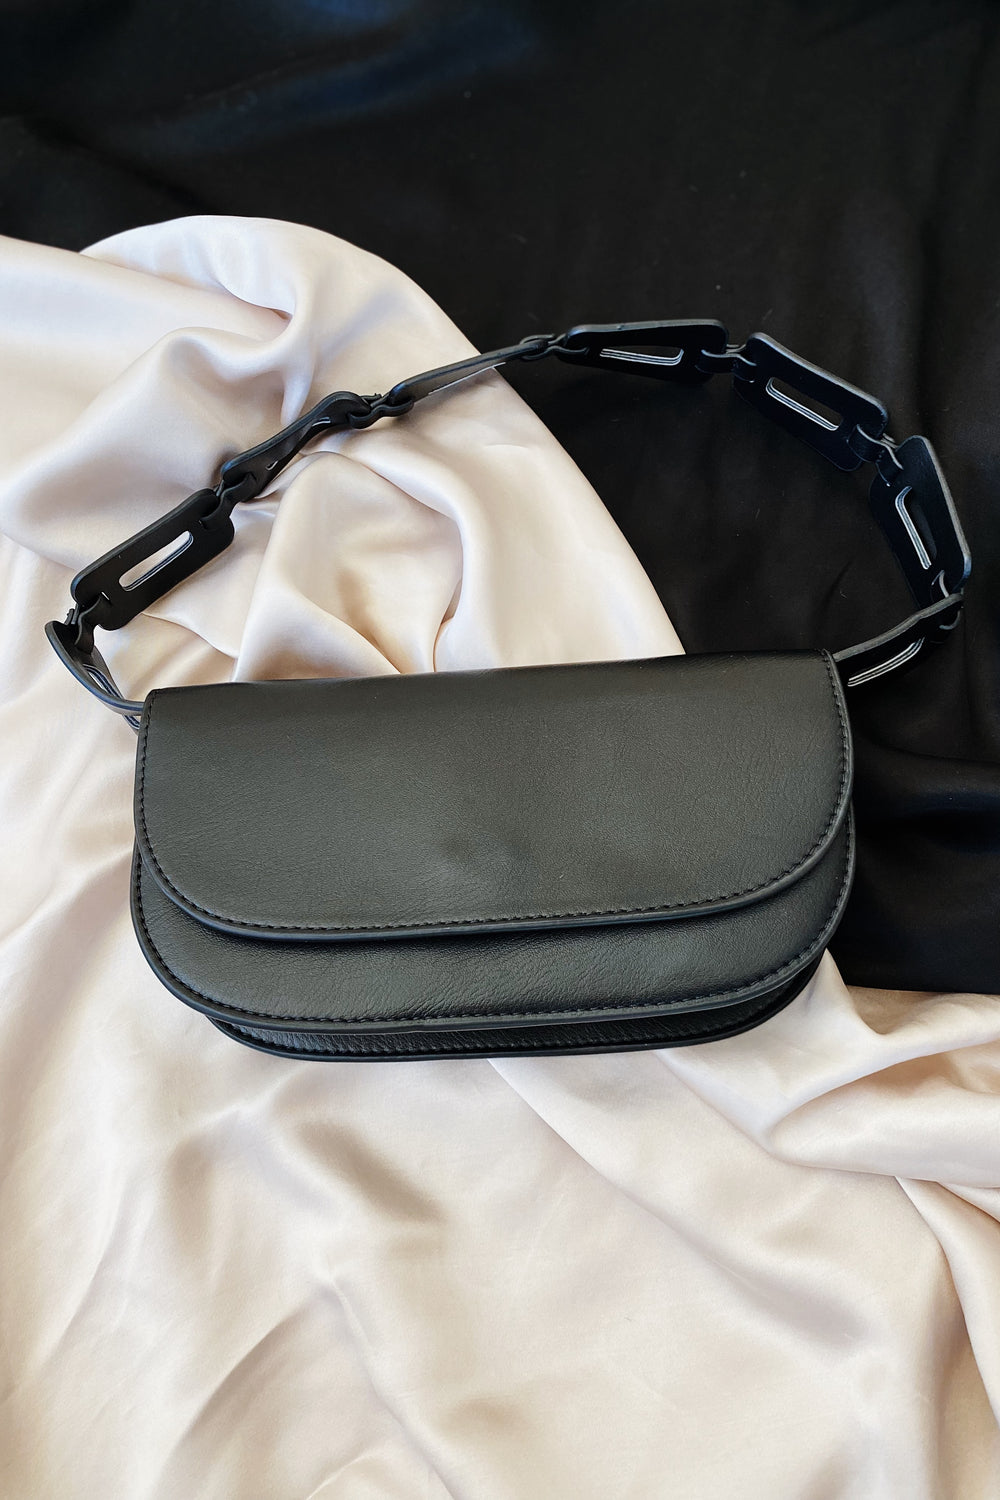 Melie Bianco Inez Bag in Black - Whimsy & Row